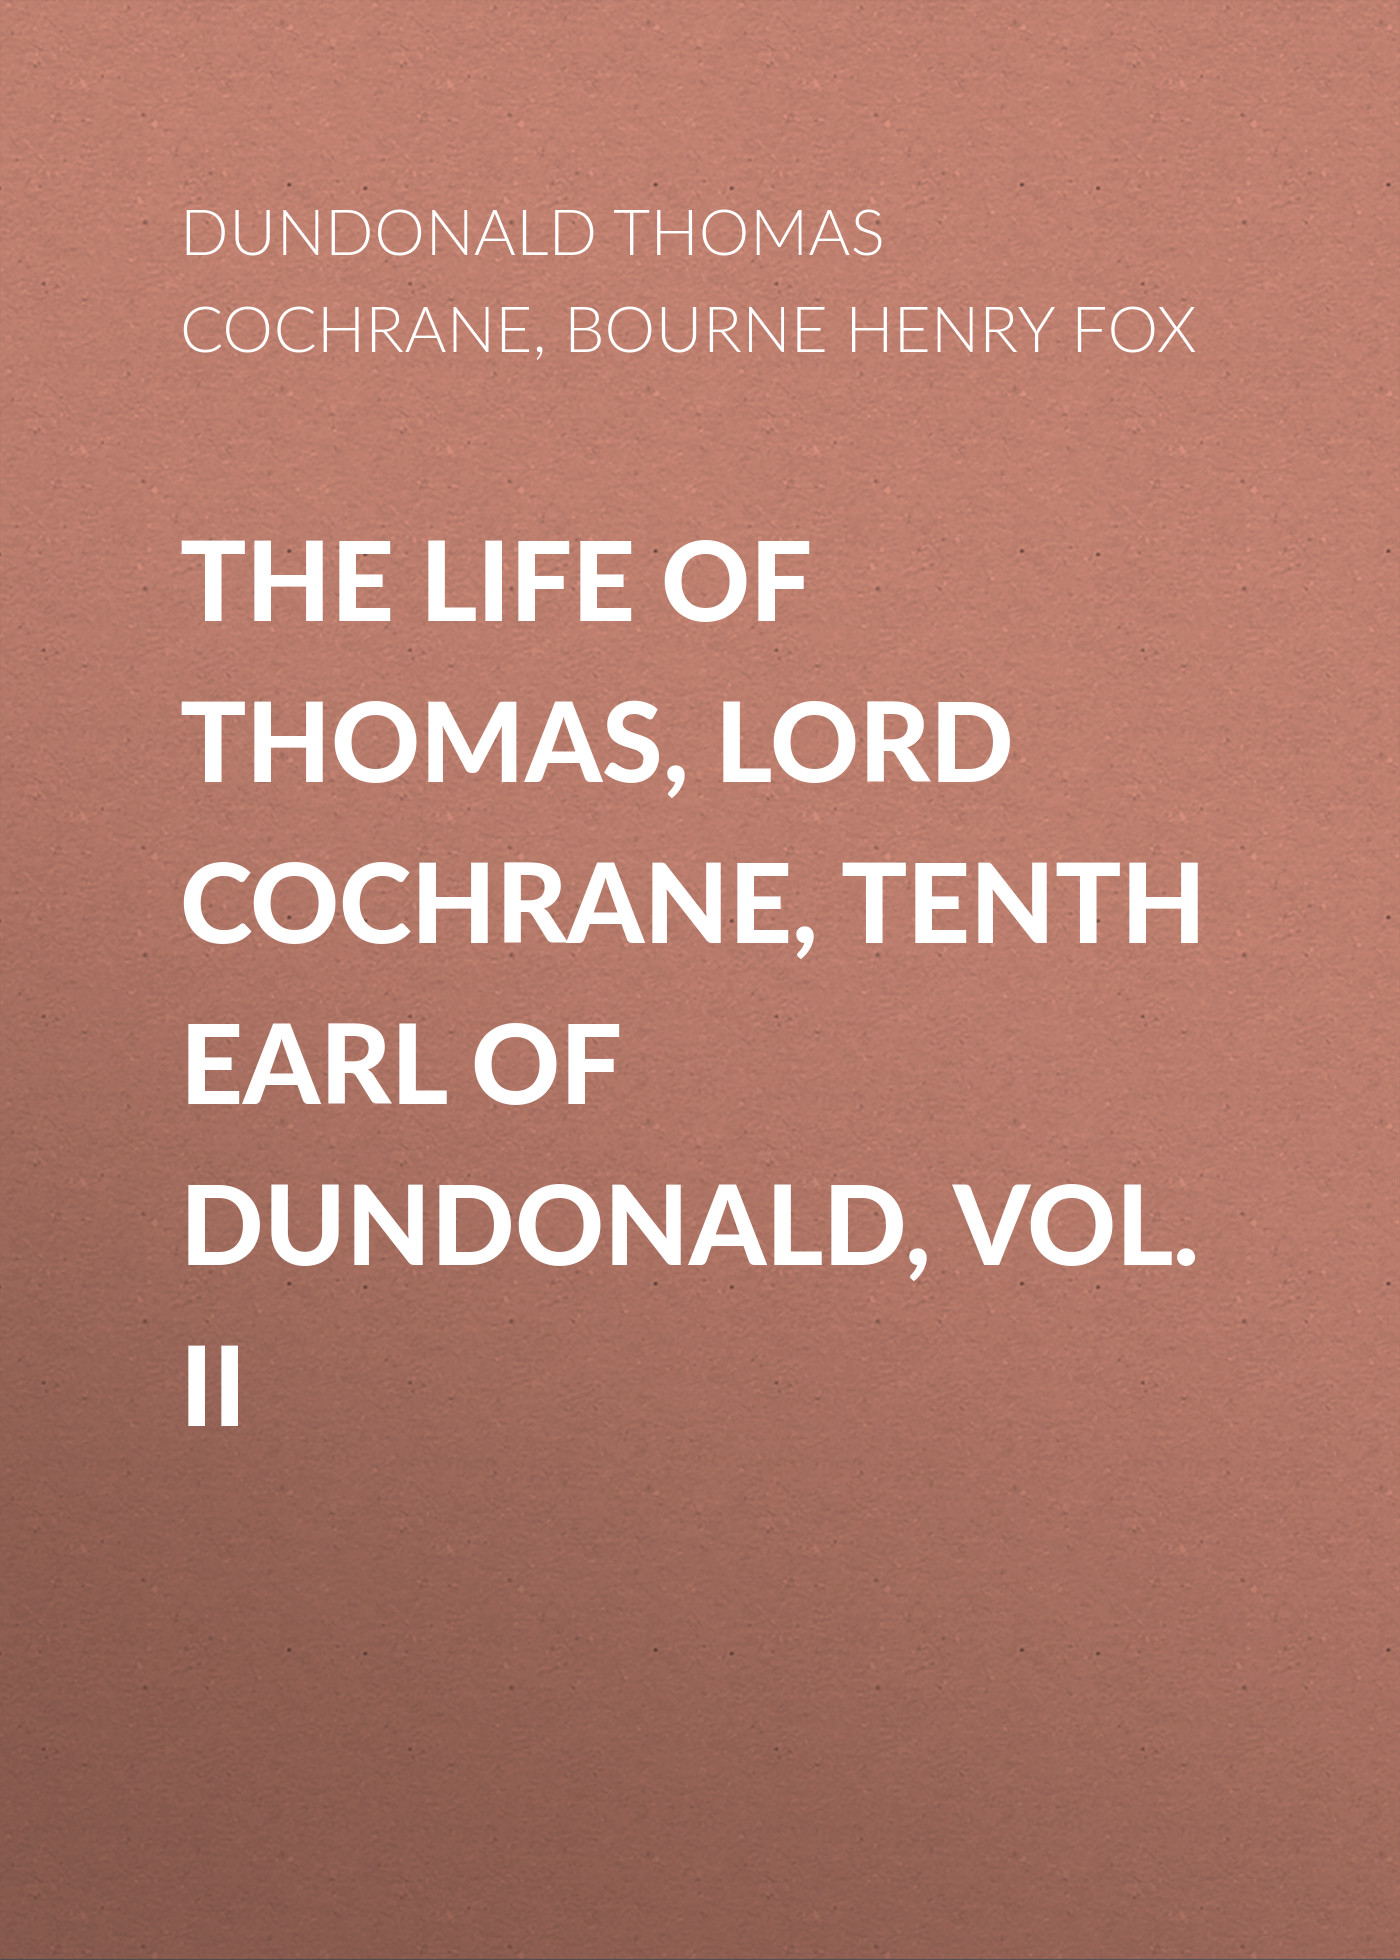 Книга The Life of Thomas, Lord Cochrane, Tenth Earl of Dundonald, Vol. II из серии , созданная Henry Bourne, Thomas Dundonald, может относится к жанру Зарубежная старинная литература, Зарубежная классика, Биографии и Мемуары. Стоимость электронной книги The Life of Thomas, Lord Cochrane, Tenth Earl of Dundonald, Vol. II с идентификатором 24169396 составляет 0 руб.